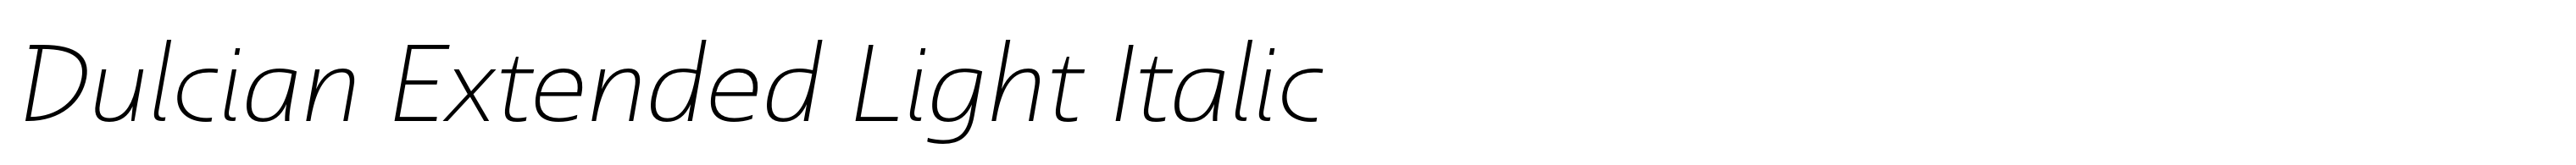 Dulcian Extended Light Italic